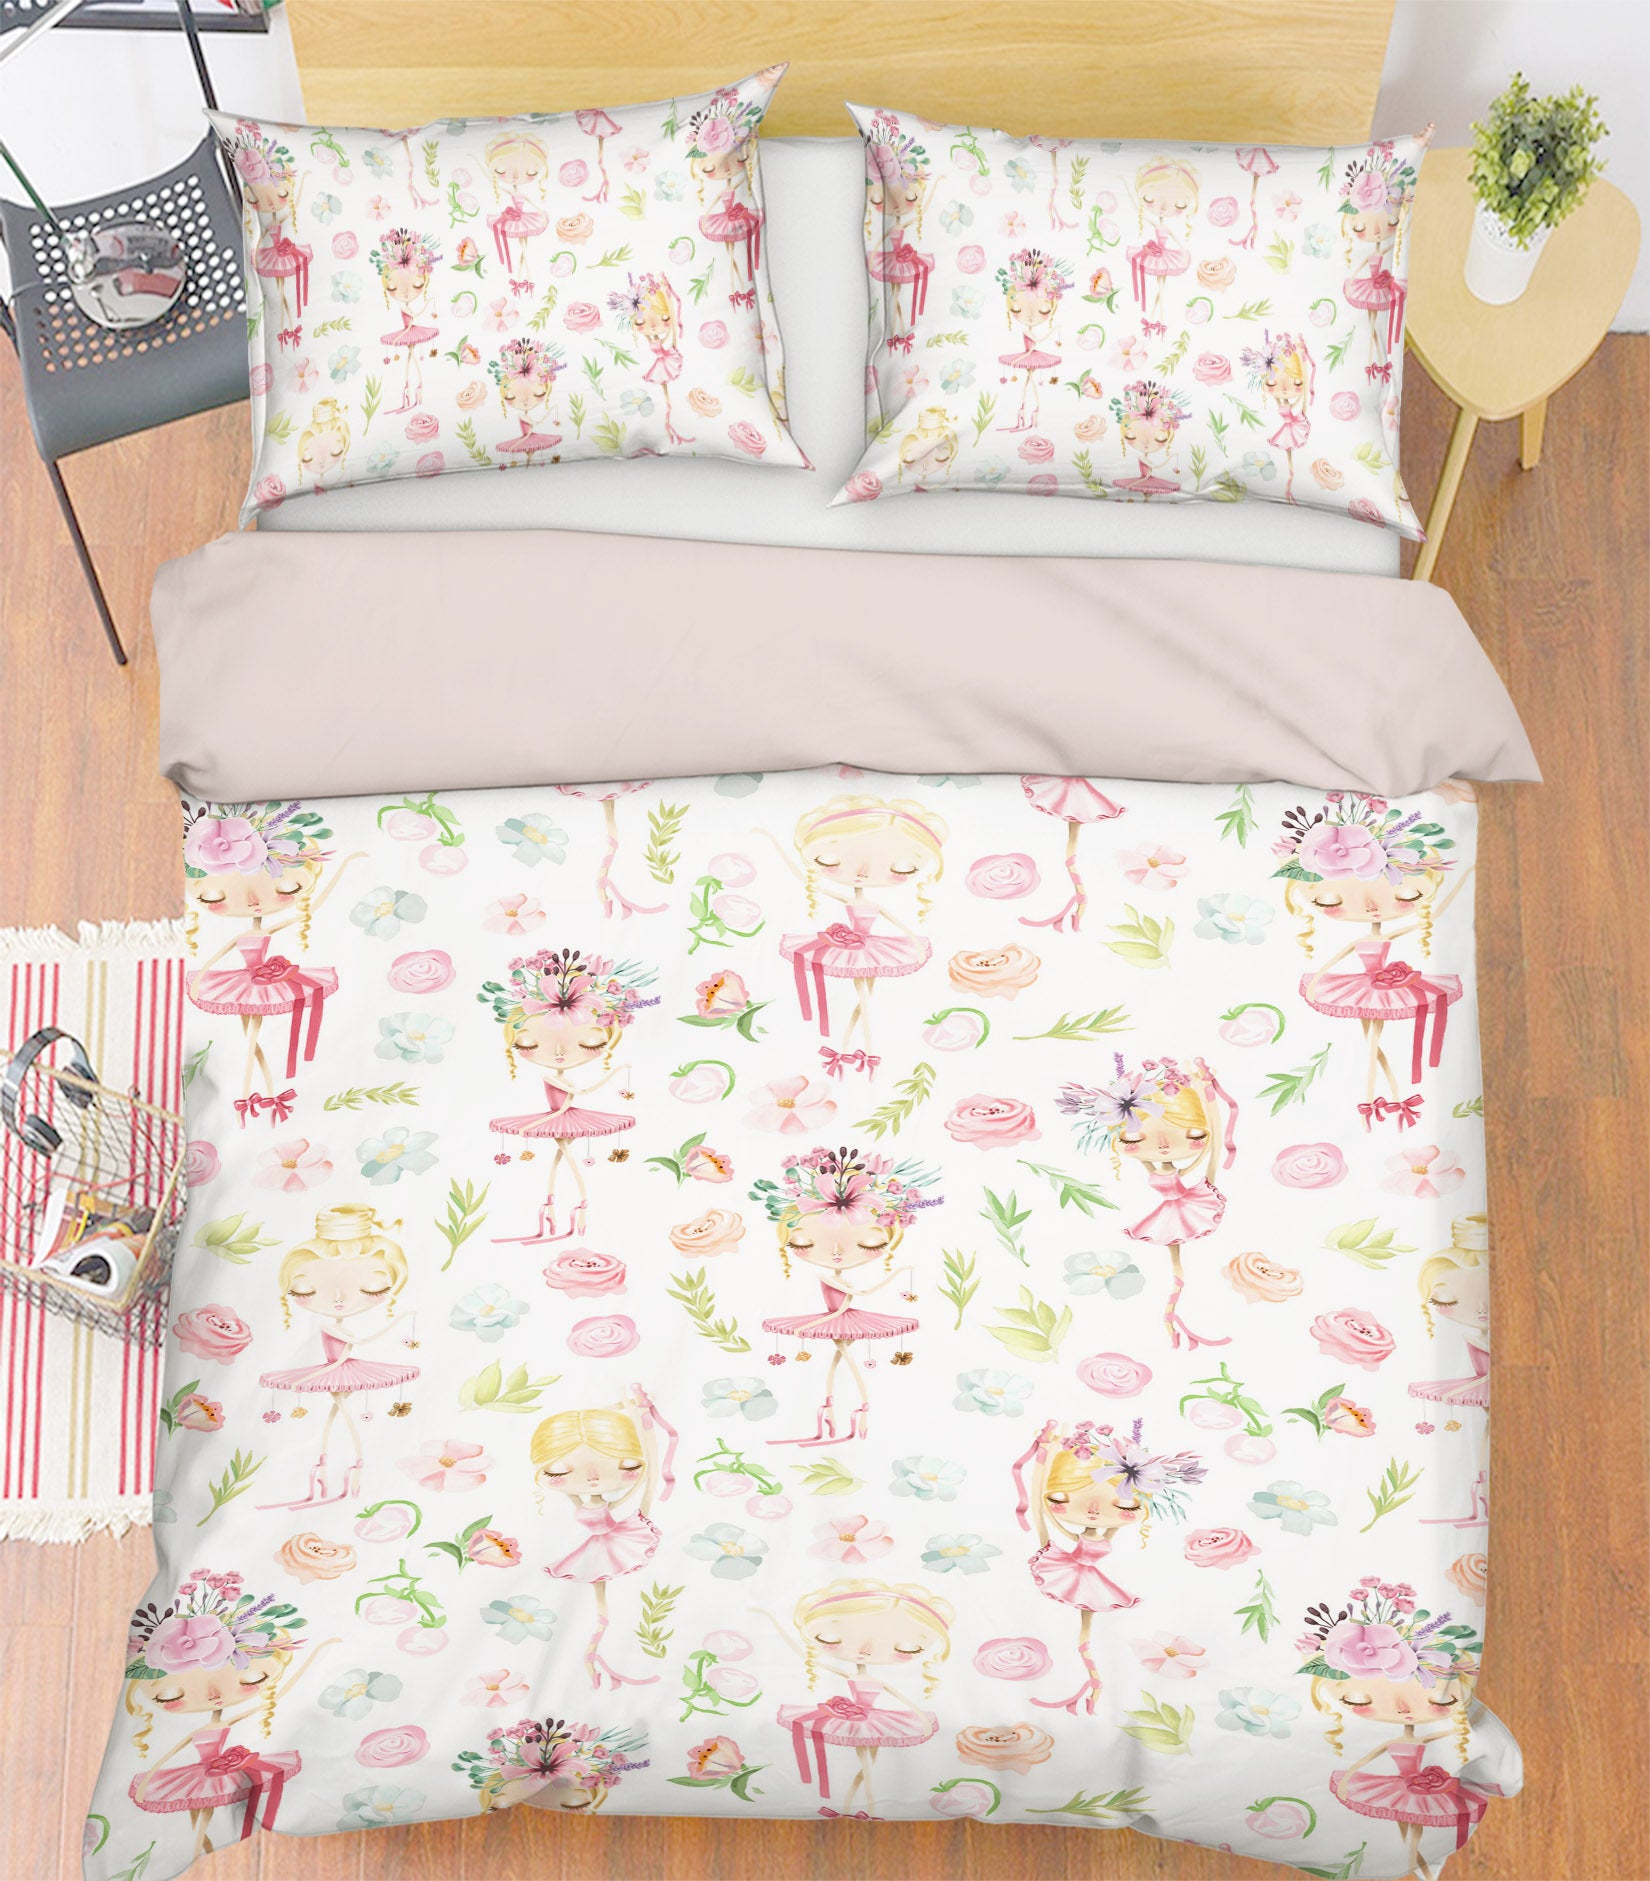 3D Cute Girl Rose 217 Uta Naumann Bedding Bed Pillowcases Quilt